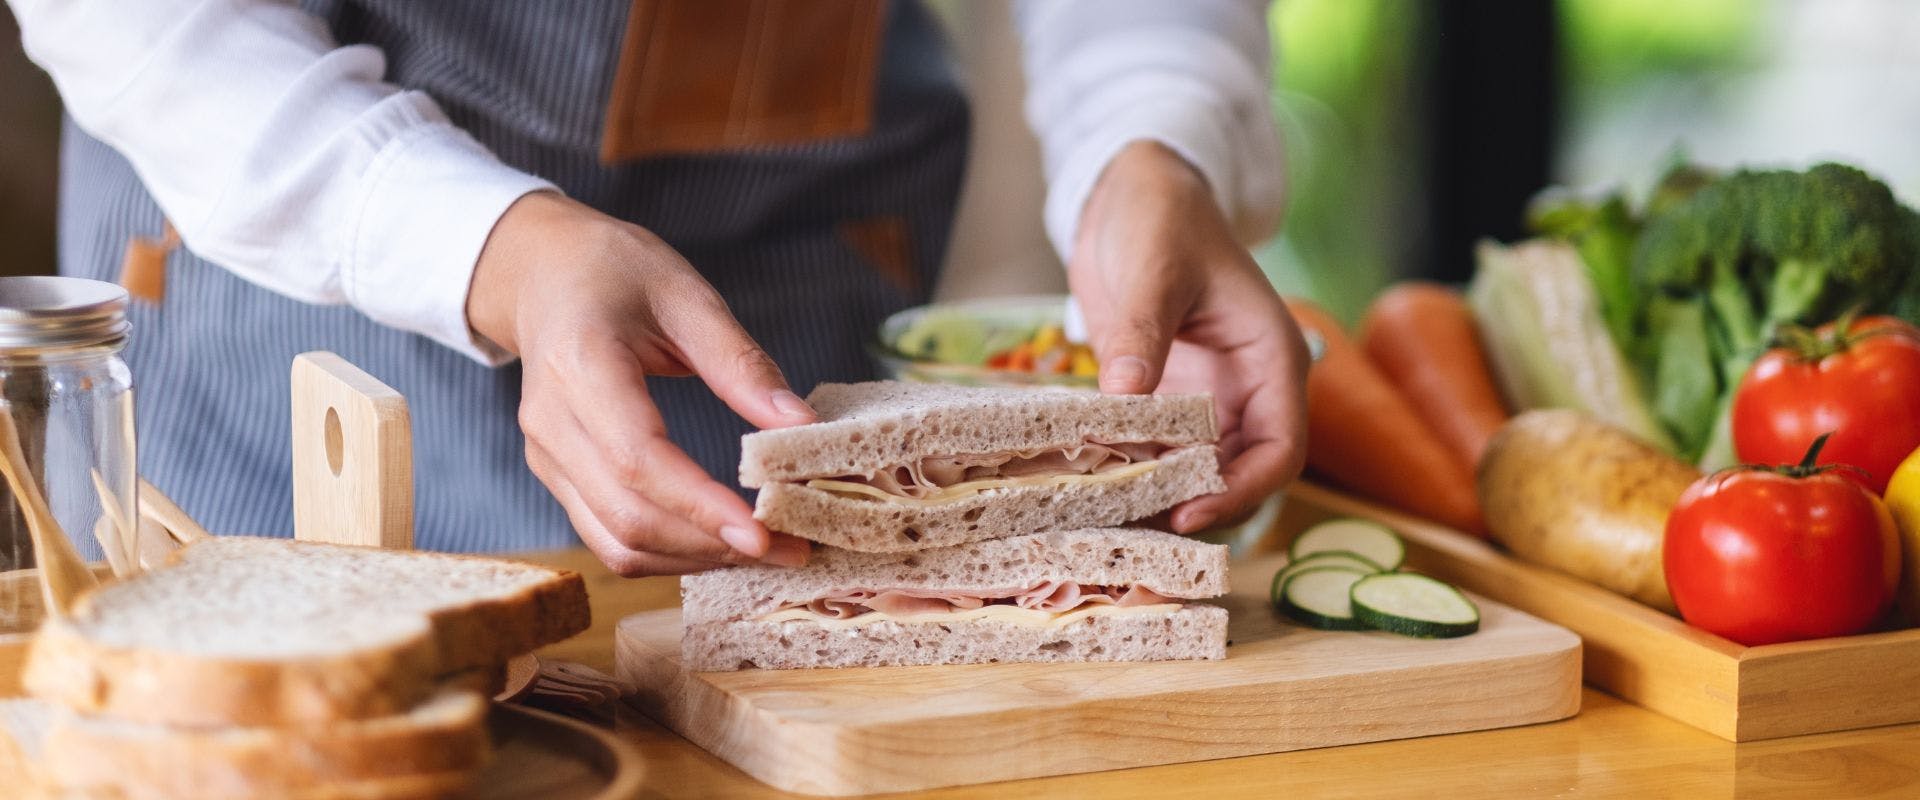 Person assembling ham sandwich